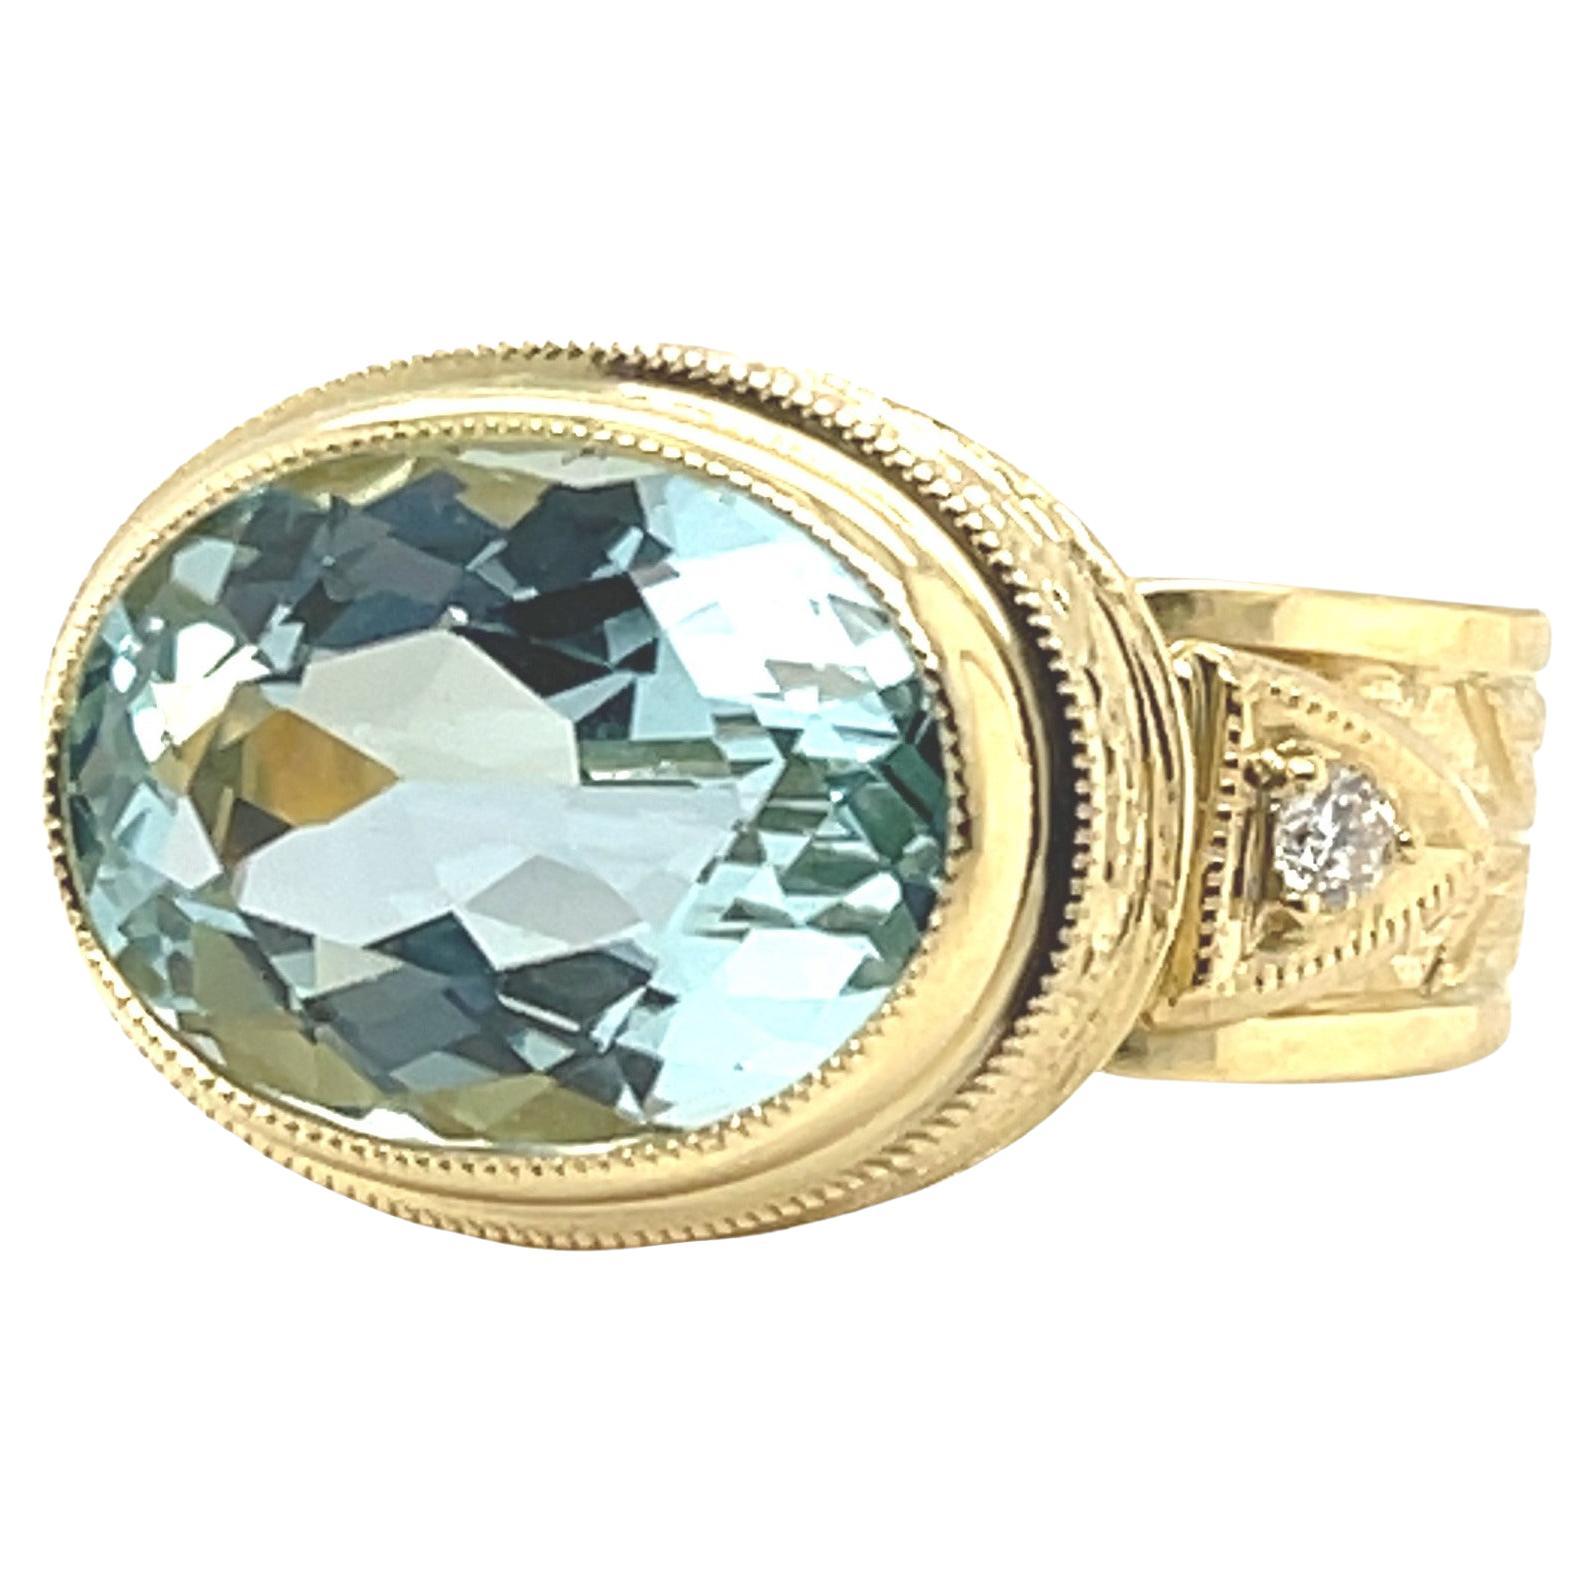 Cette magnifique bague faite à la main présente une étincelante aigue-marine ovale de 6,16 carats sertie dans de l'or jaune 18 carats avec des diamants ! La pierre centrale a la couleur classique de l'aigue-marine - un bleu cristallin brillant si